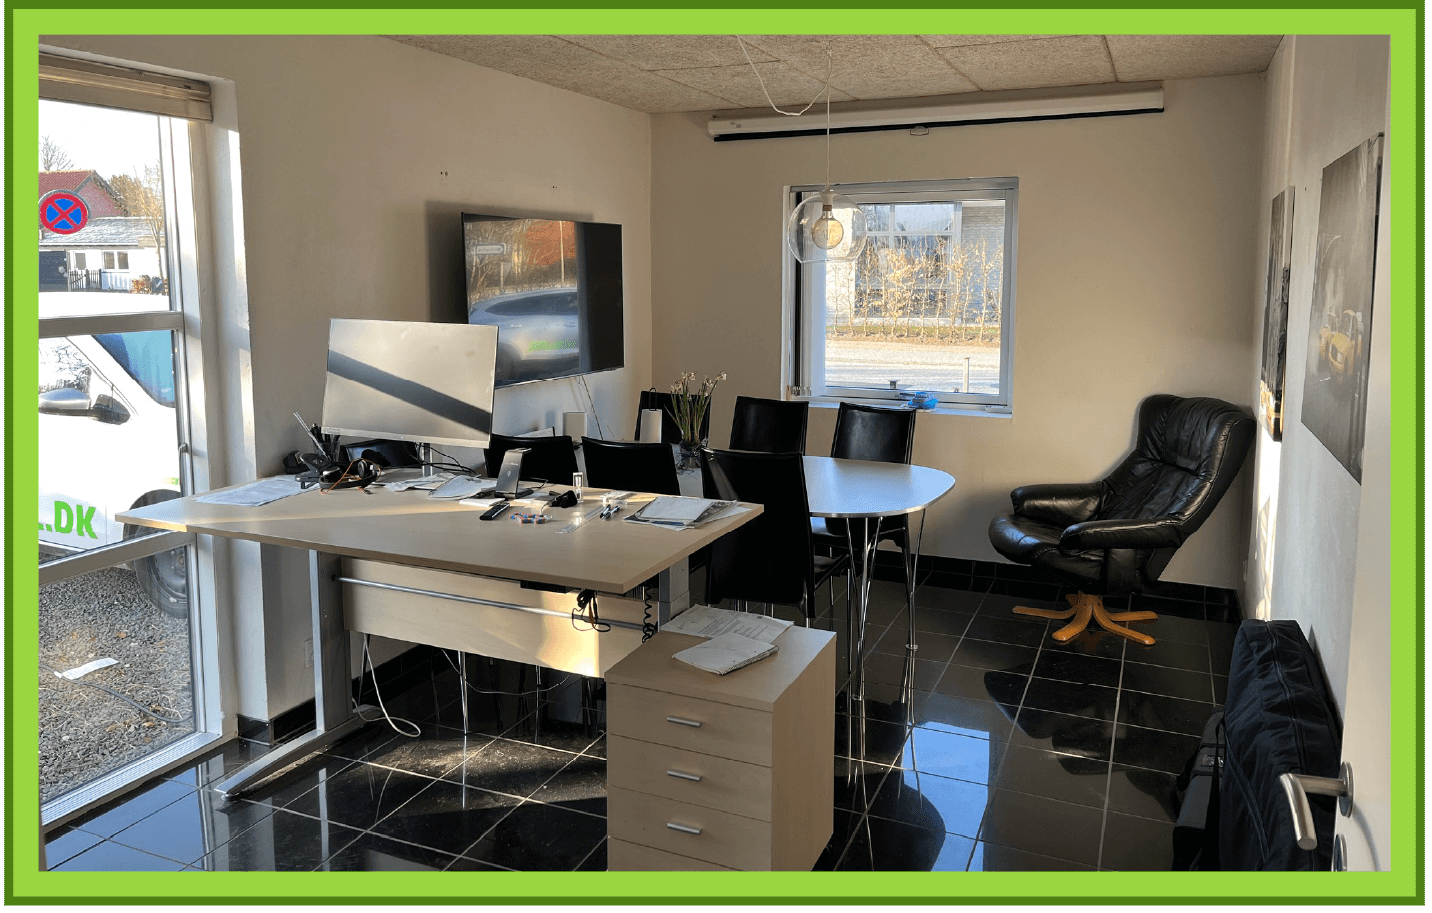 Mødelokale med flisegulv, tv med Bluetooth forbindelse, skrivebord, bord.